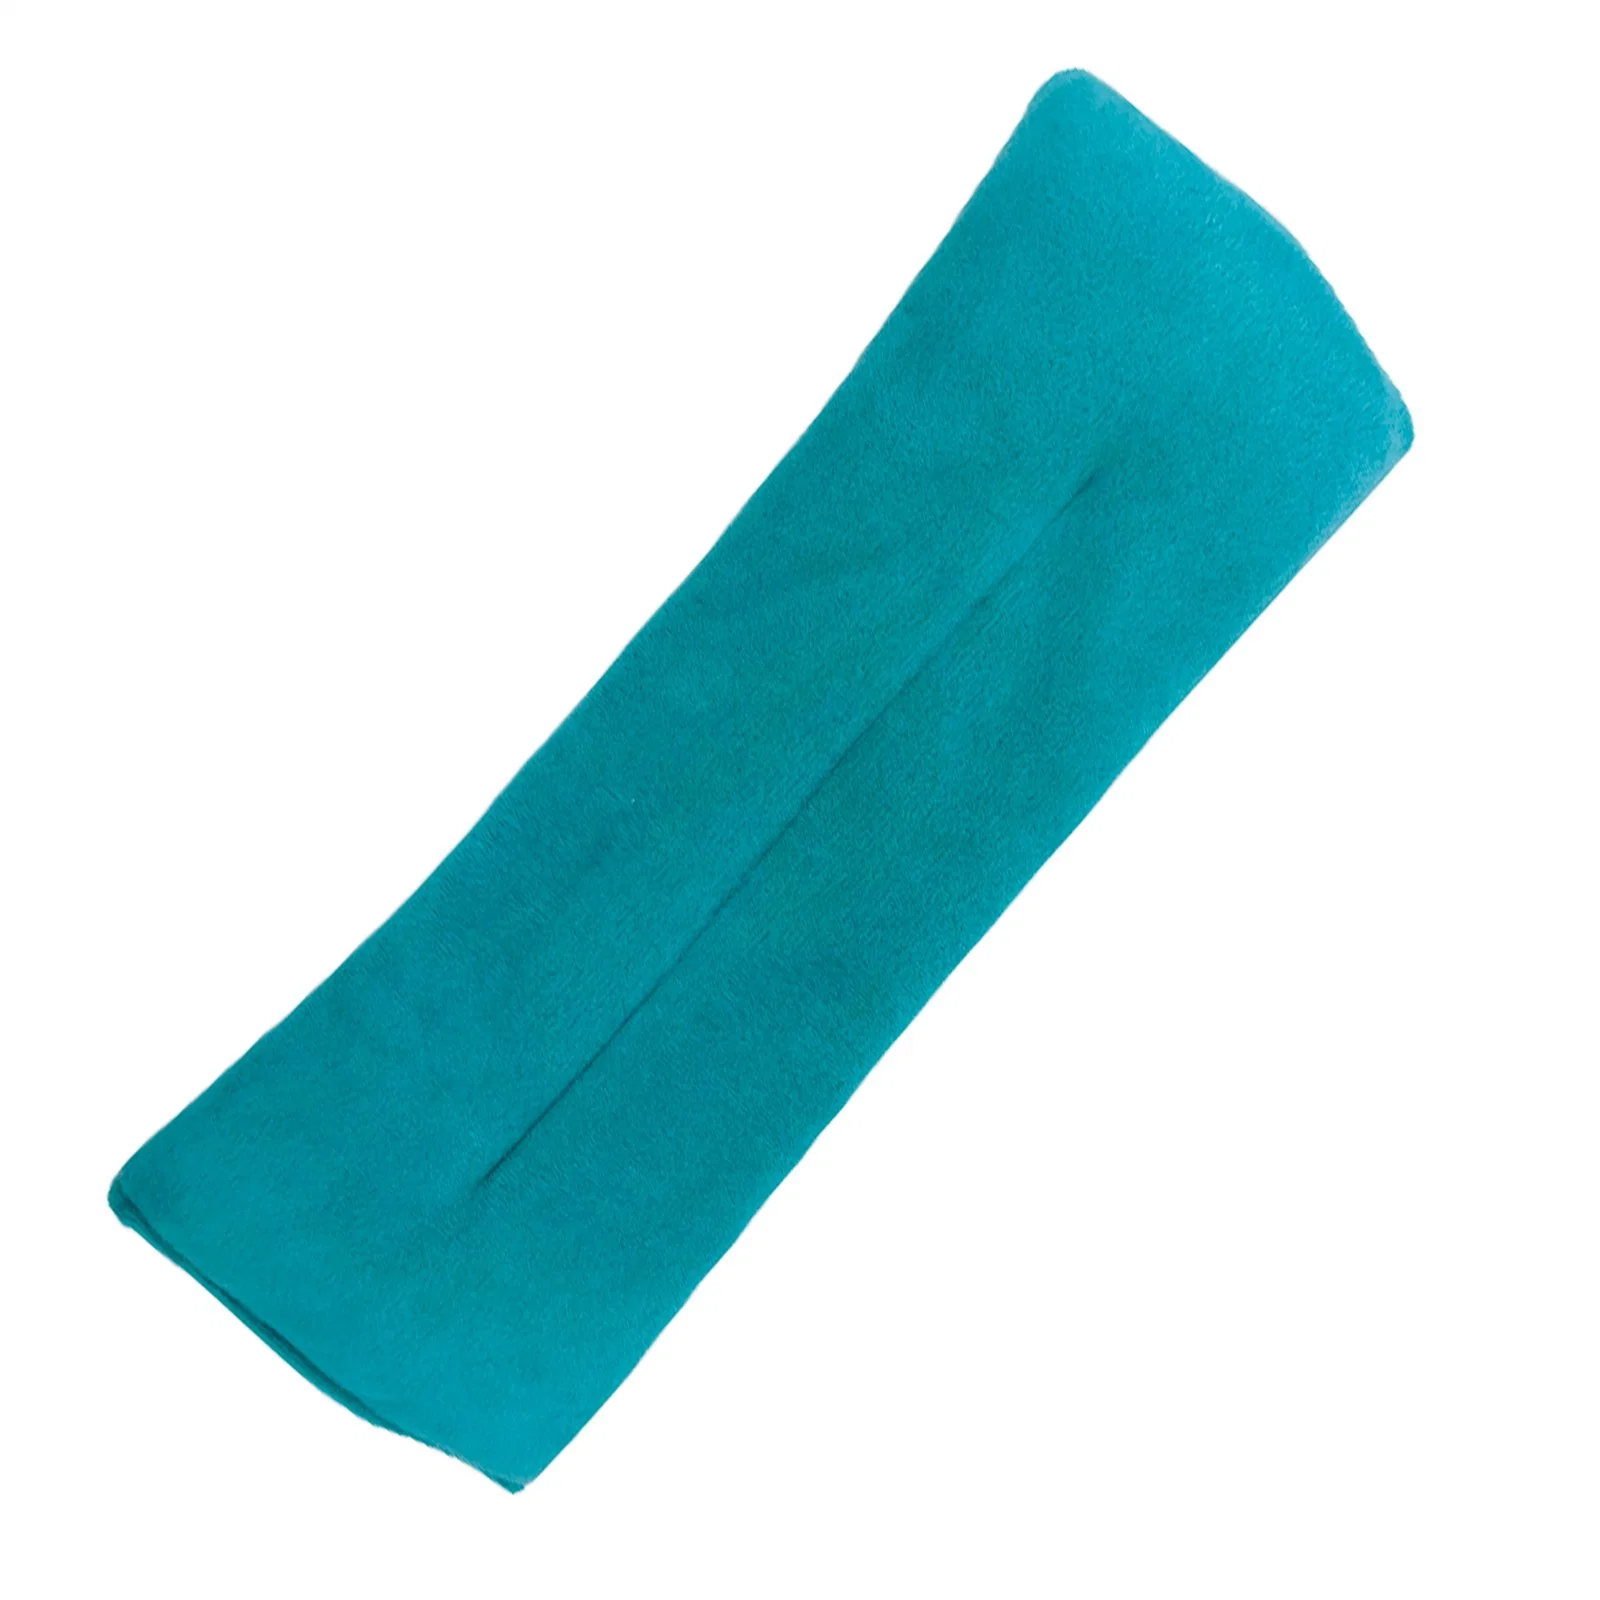 Oferta promocional esterilizado de alívio da dor de Lavanda Trigo cordões de argila natural Pack de calor frio quente almofada de airbag